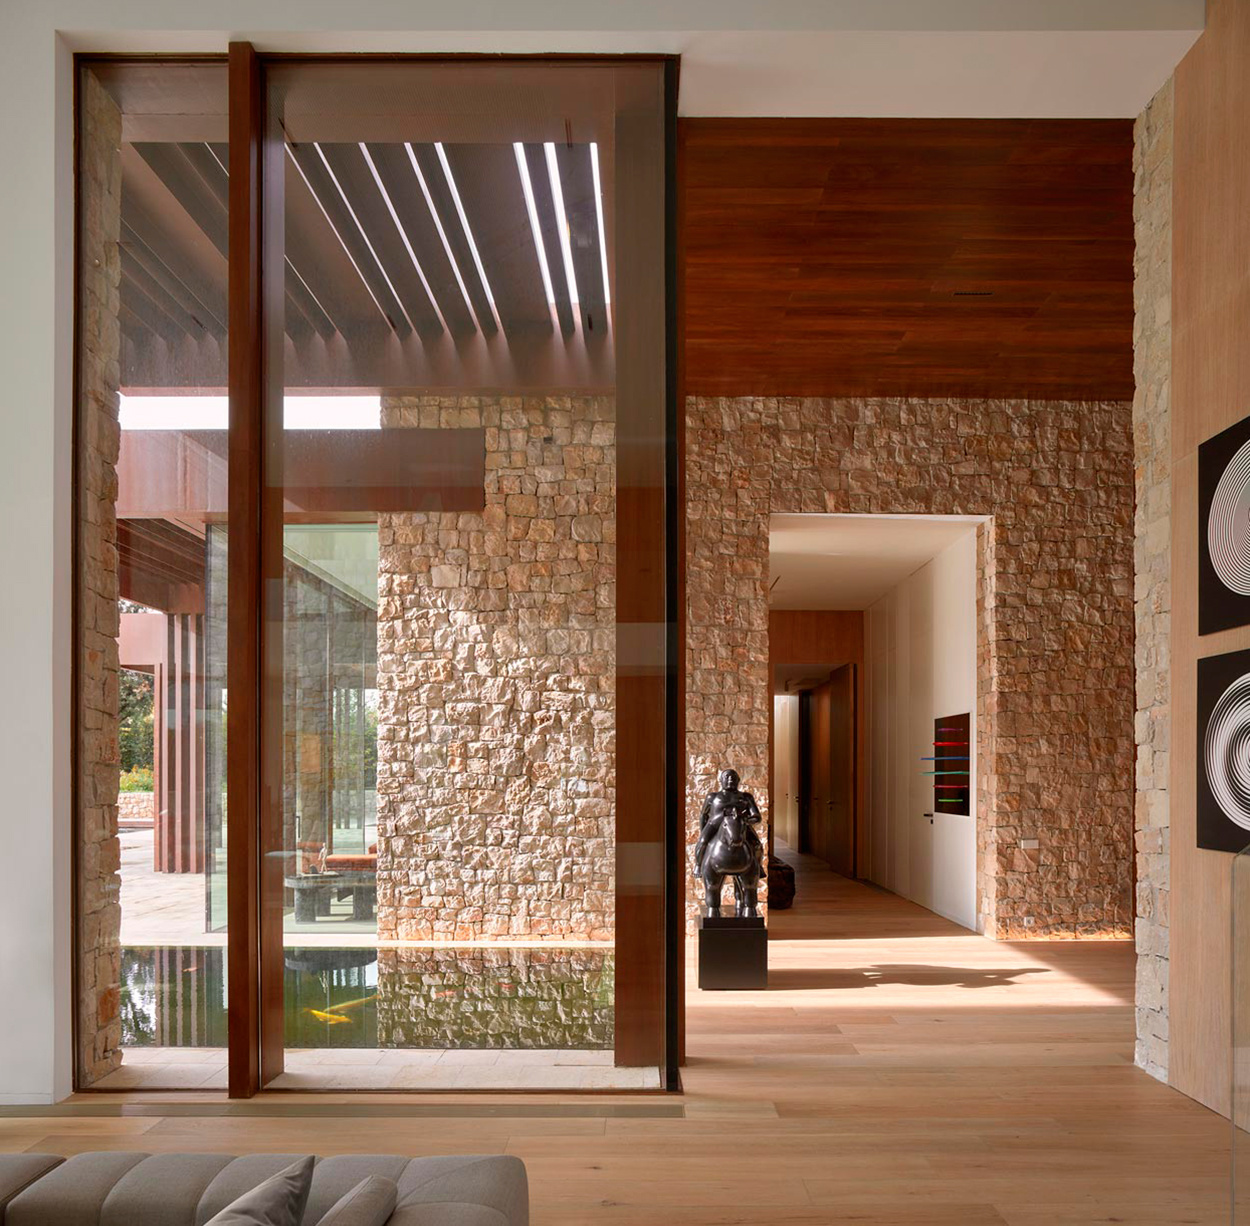 Không gian sống tuyệt đẹp của nhà thiết kế thời trang kiêm nhiếp ảnh gia Daniel Nagel. Nội thất trong nhà hoàn toàn sử dụng đá tự nhiên để ốp các bức tường cũng như gỗ tự nhiên cho sàn nhà, tạo nên sự đắt giá, sang chảnh cho căn biệt thự.